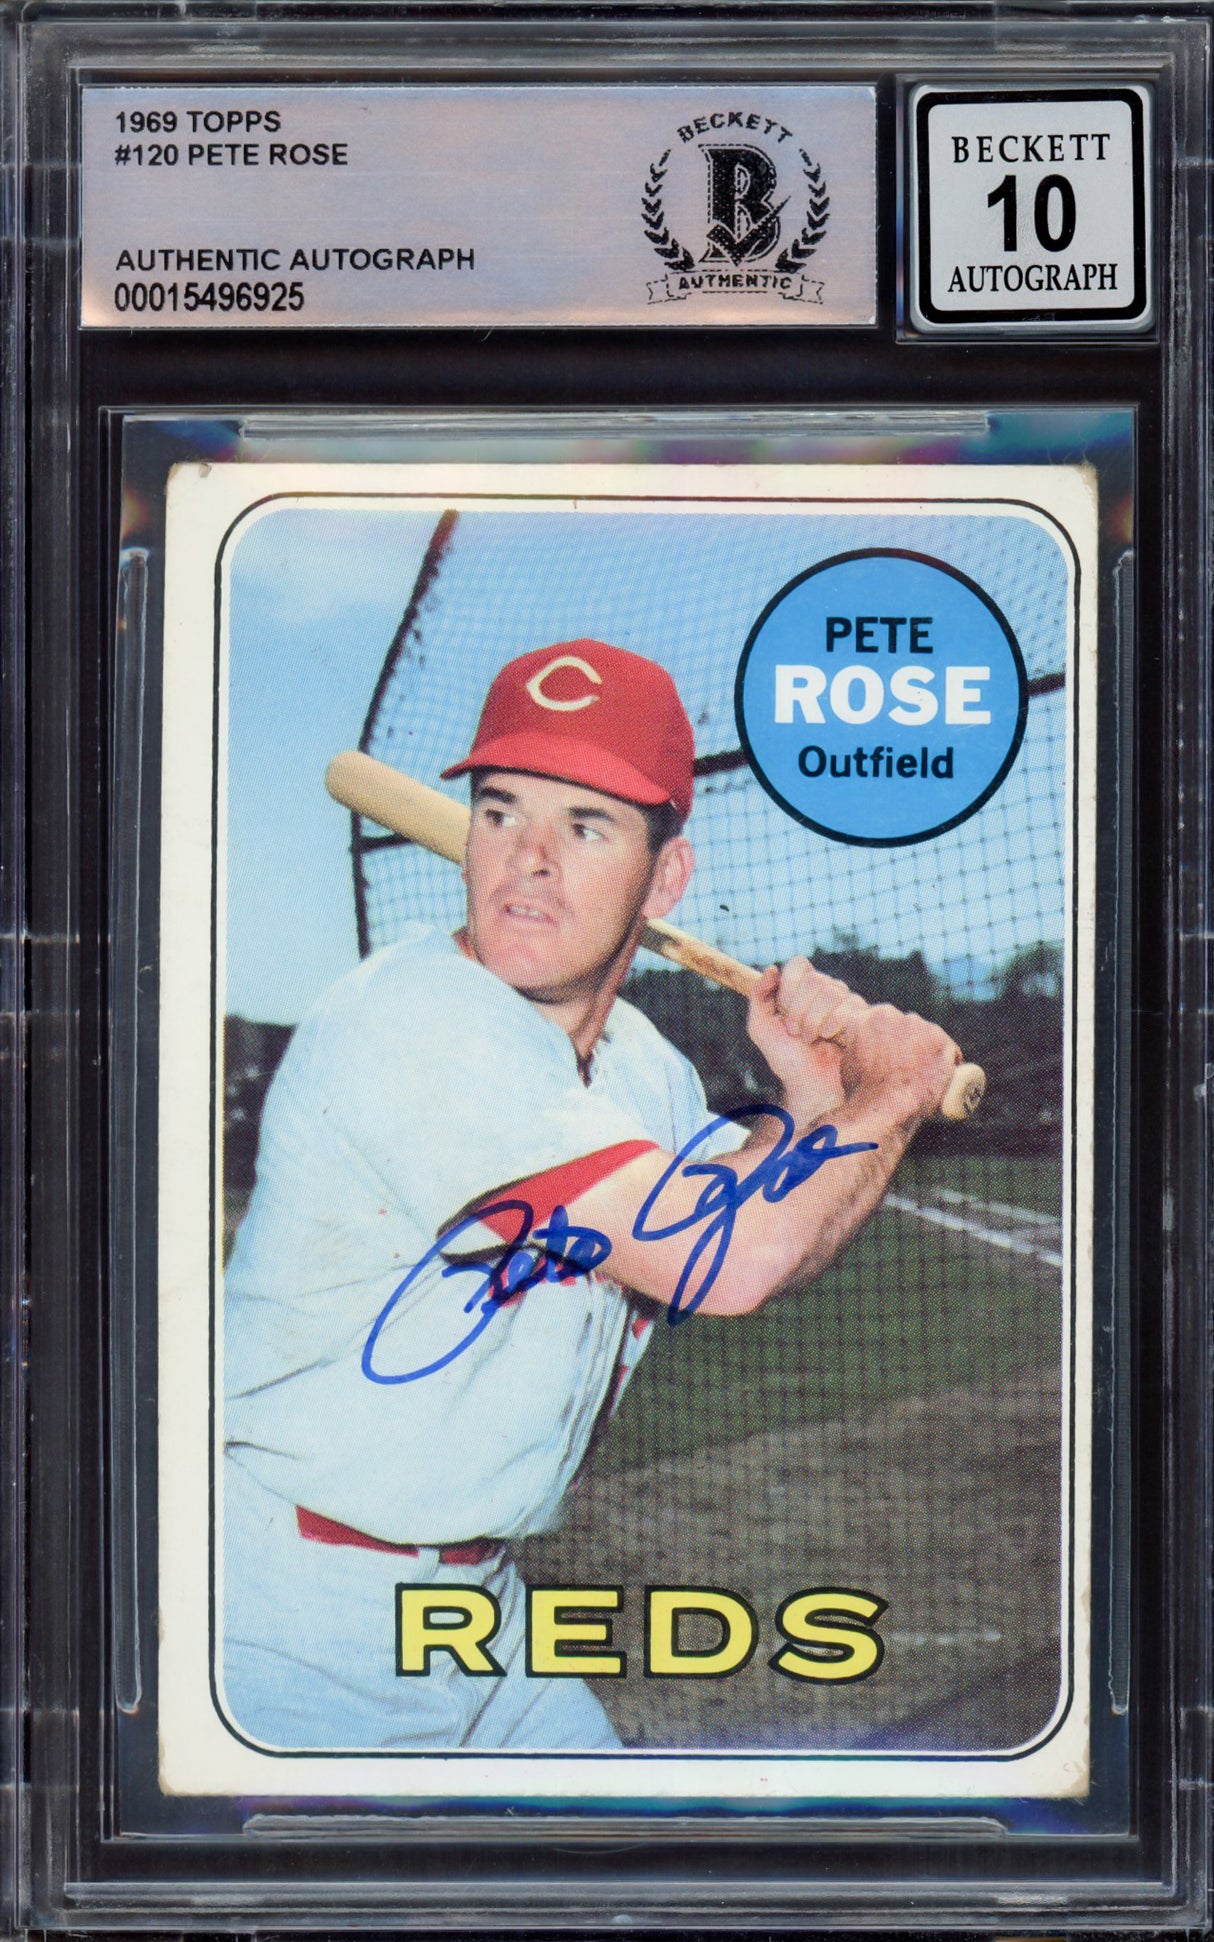 Pete Rose Autographed 1969 Topps Card #120 Cincinnati Reds Auto Grade Gem Mint 10 Beckett BAS #15496925